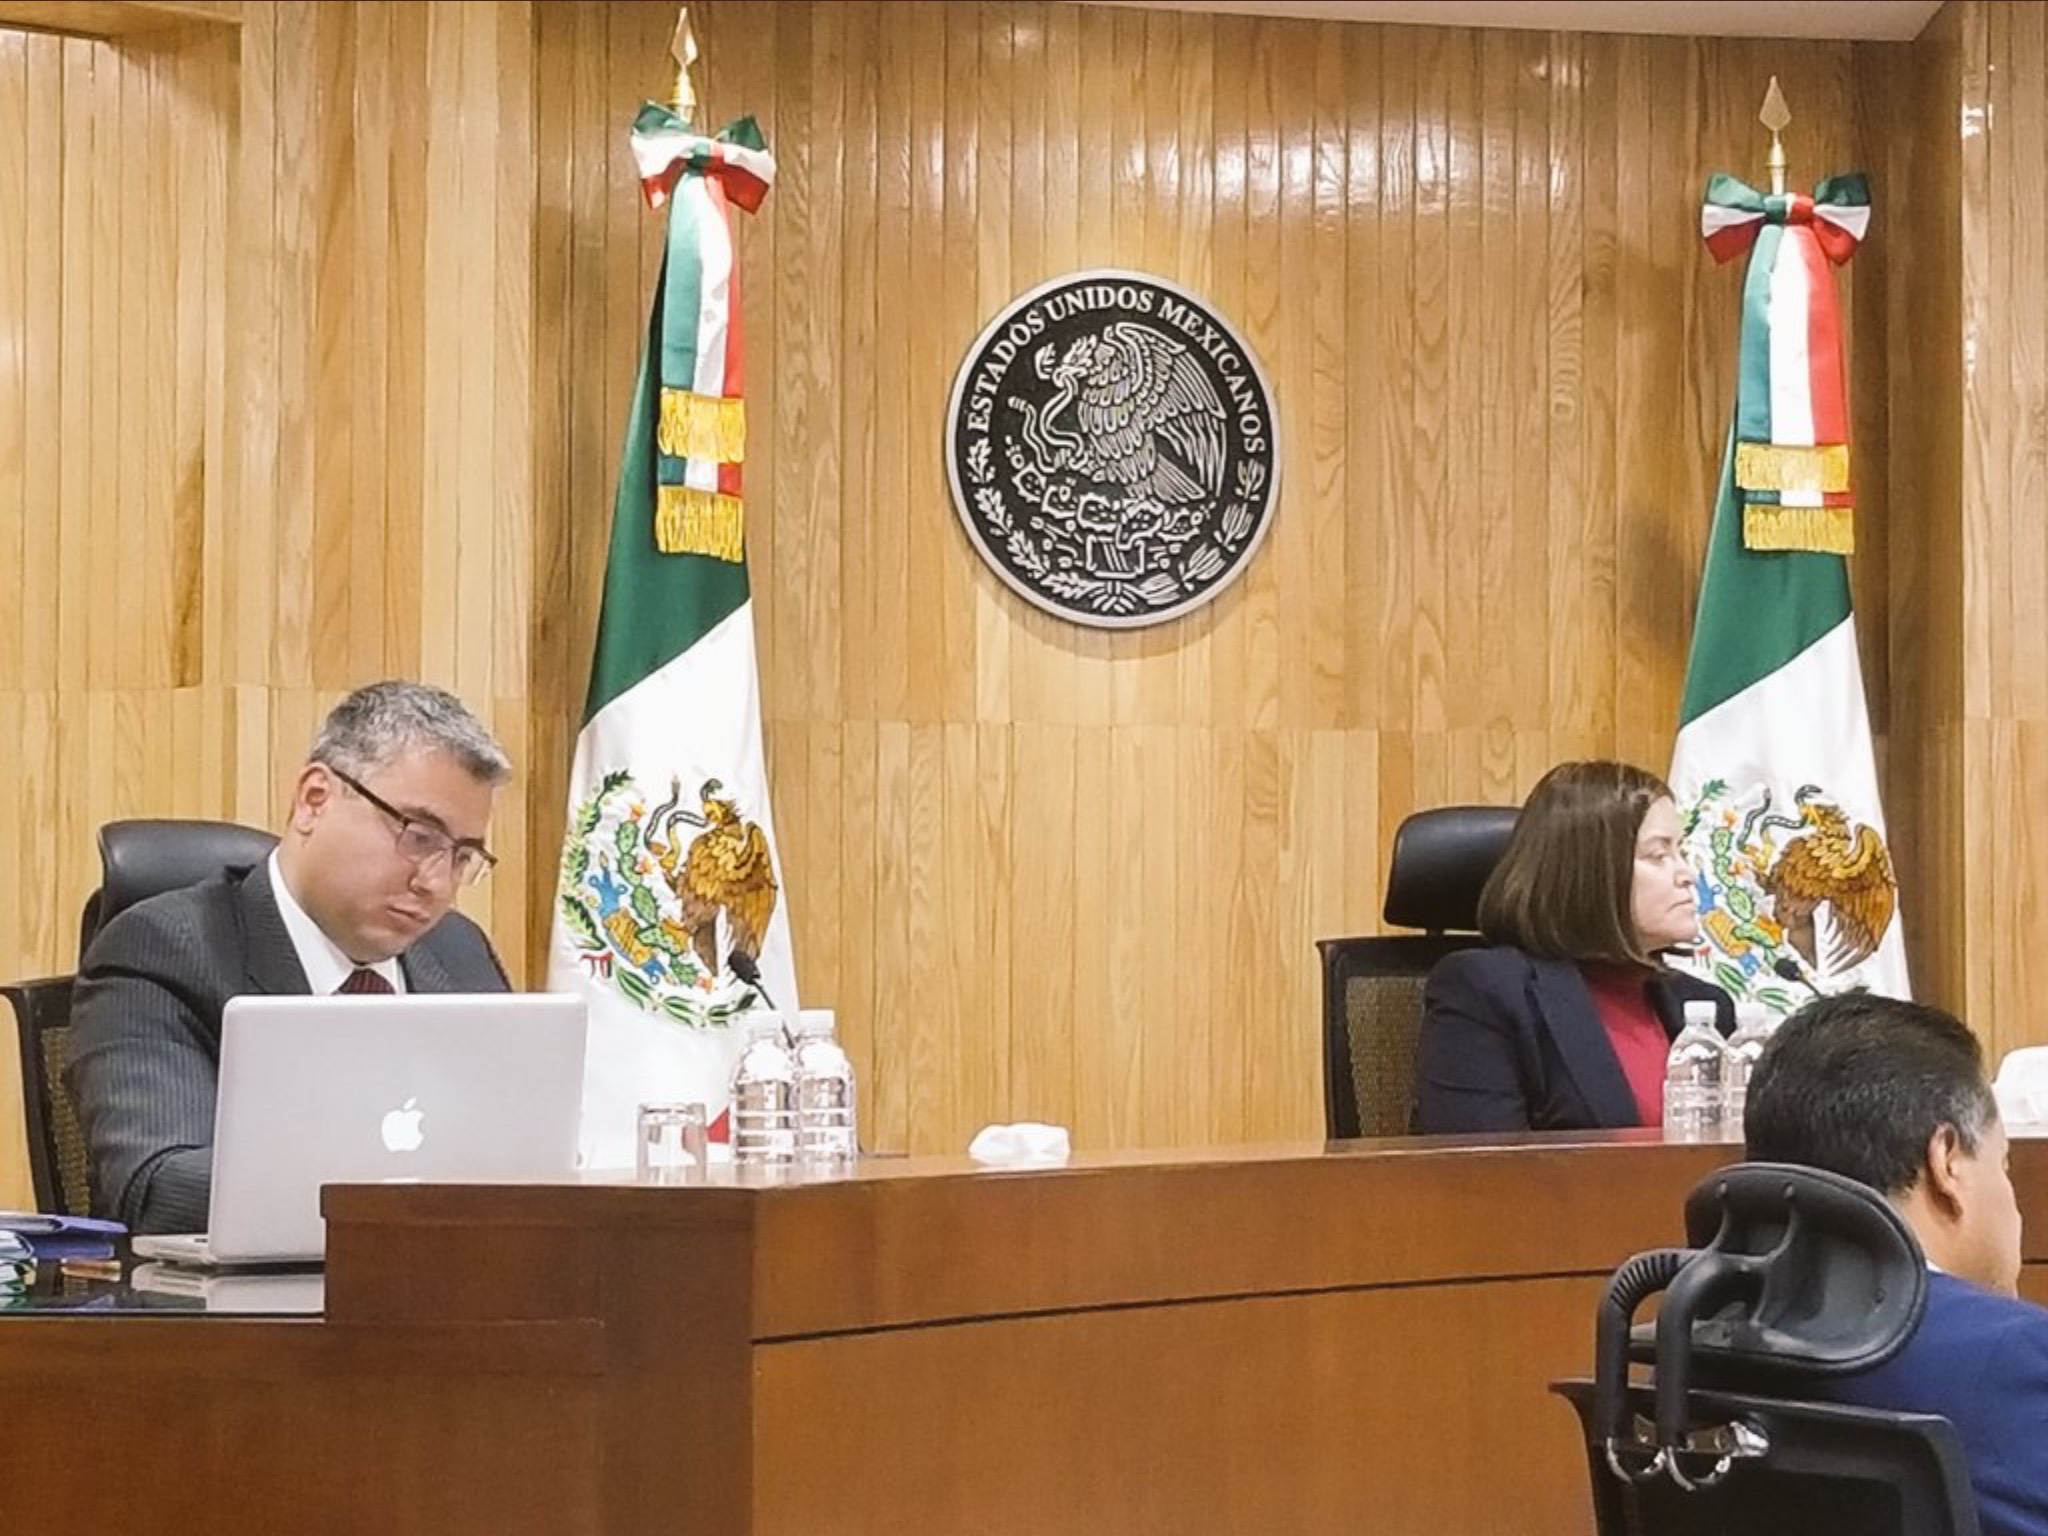 Se aprobó por mayoría de votos el instrumento censal para determinar el número de síndicos y regidores a elegir en cada municipio del Estado de México